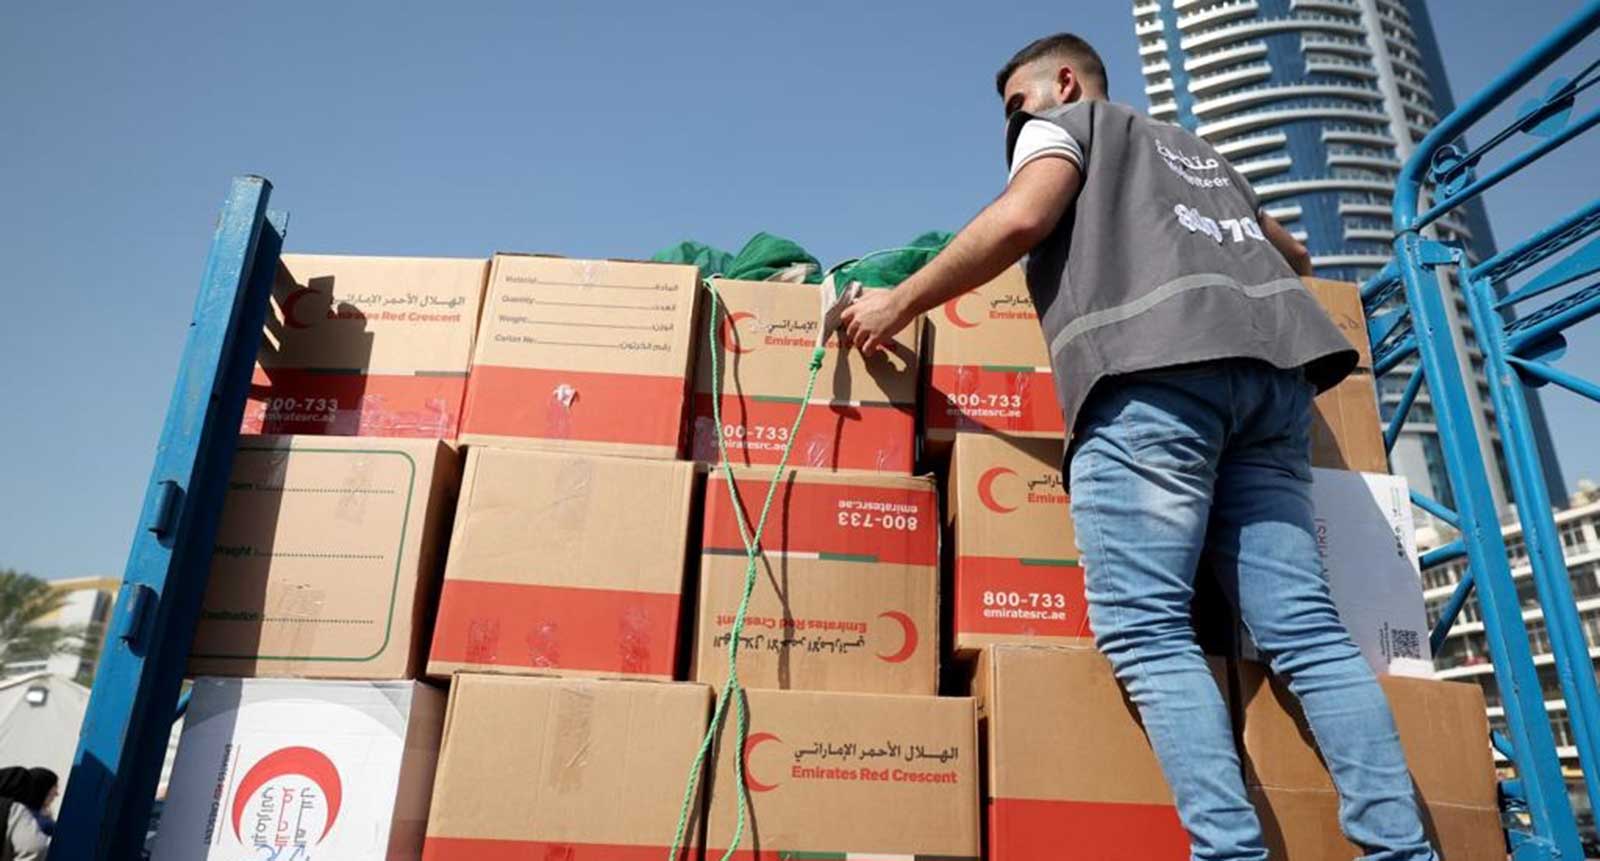 الإمارات تواصل إغاثة المتضررين في سوريا وتركيا